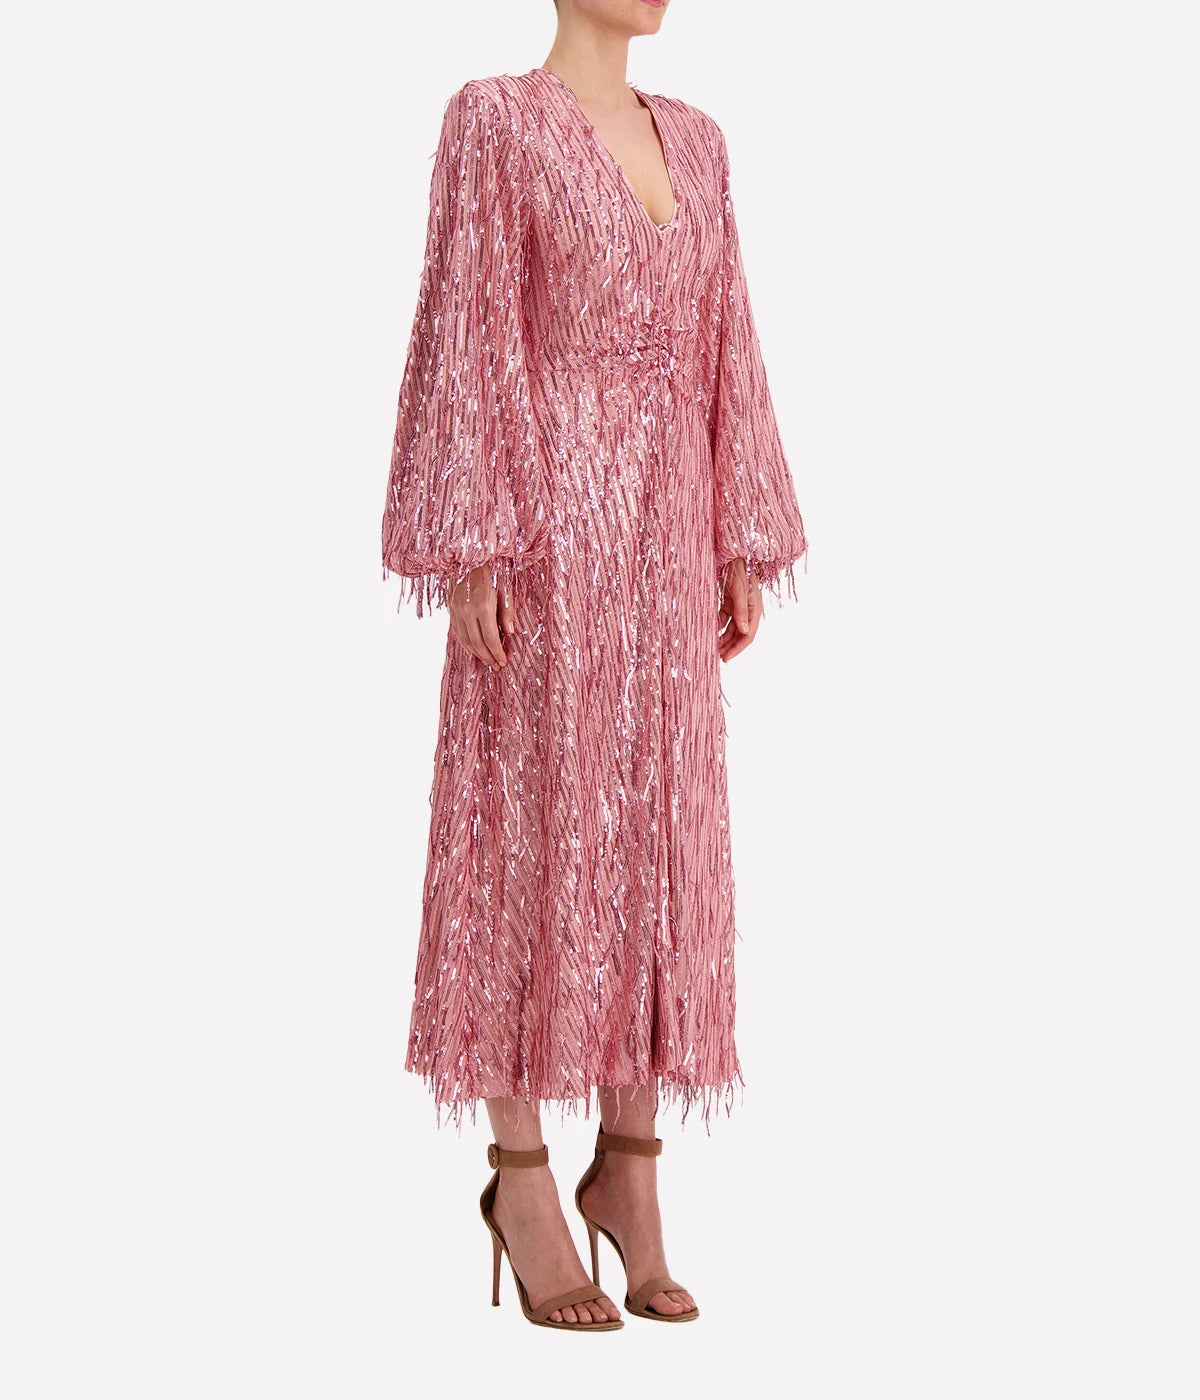 Sequin Midi V Neck Dress in Pink Mist